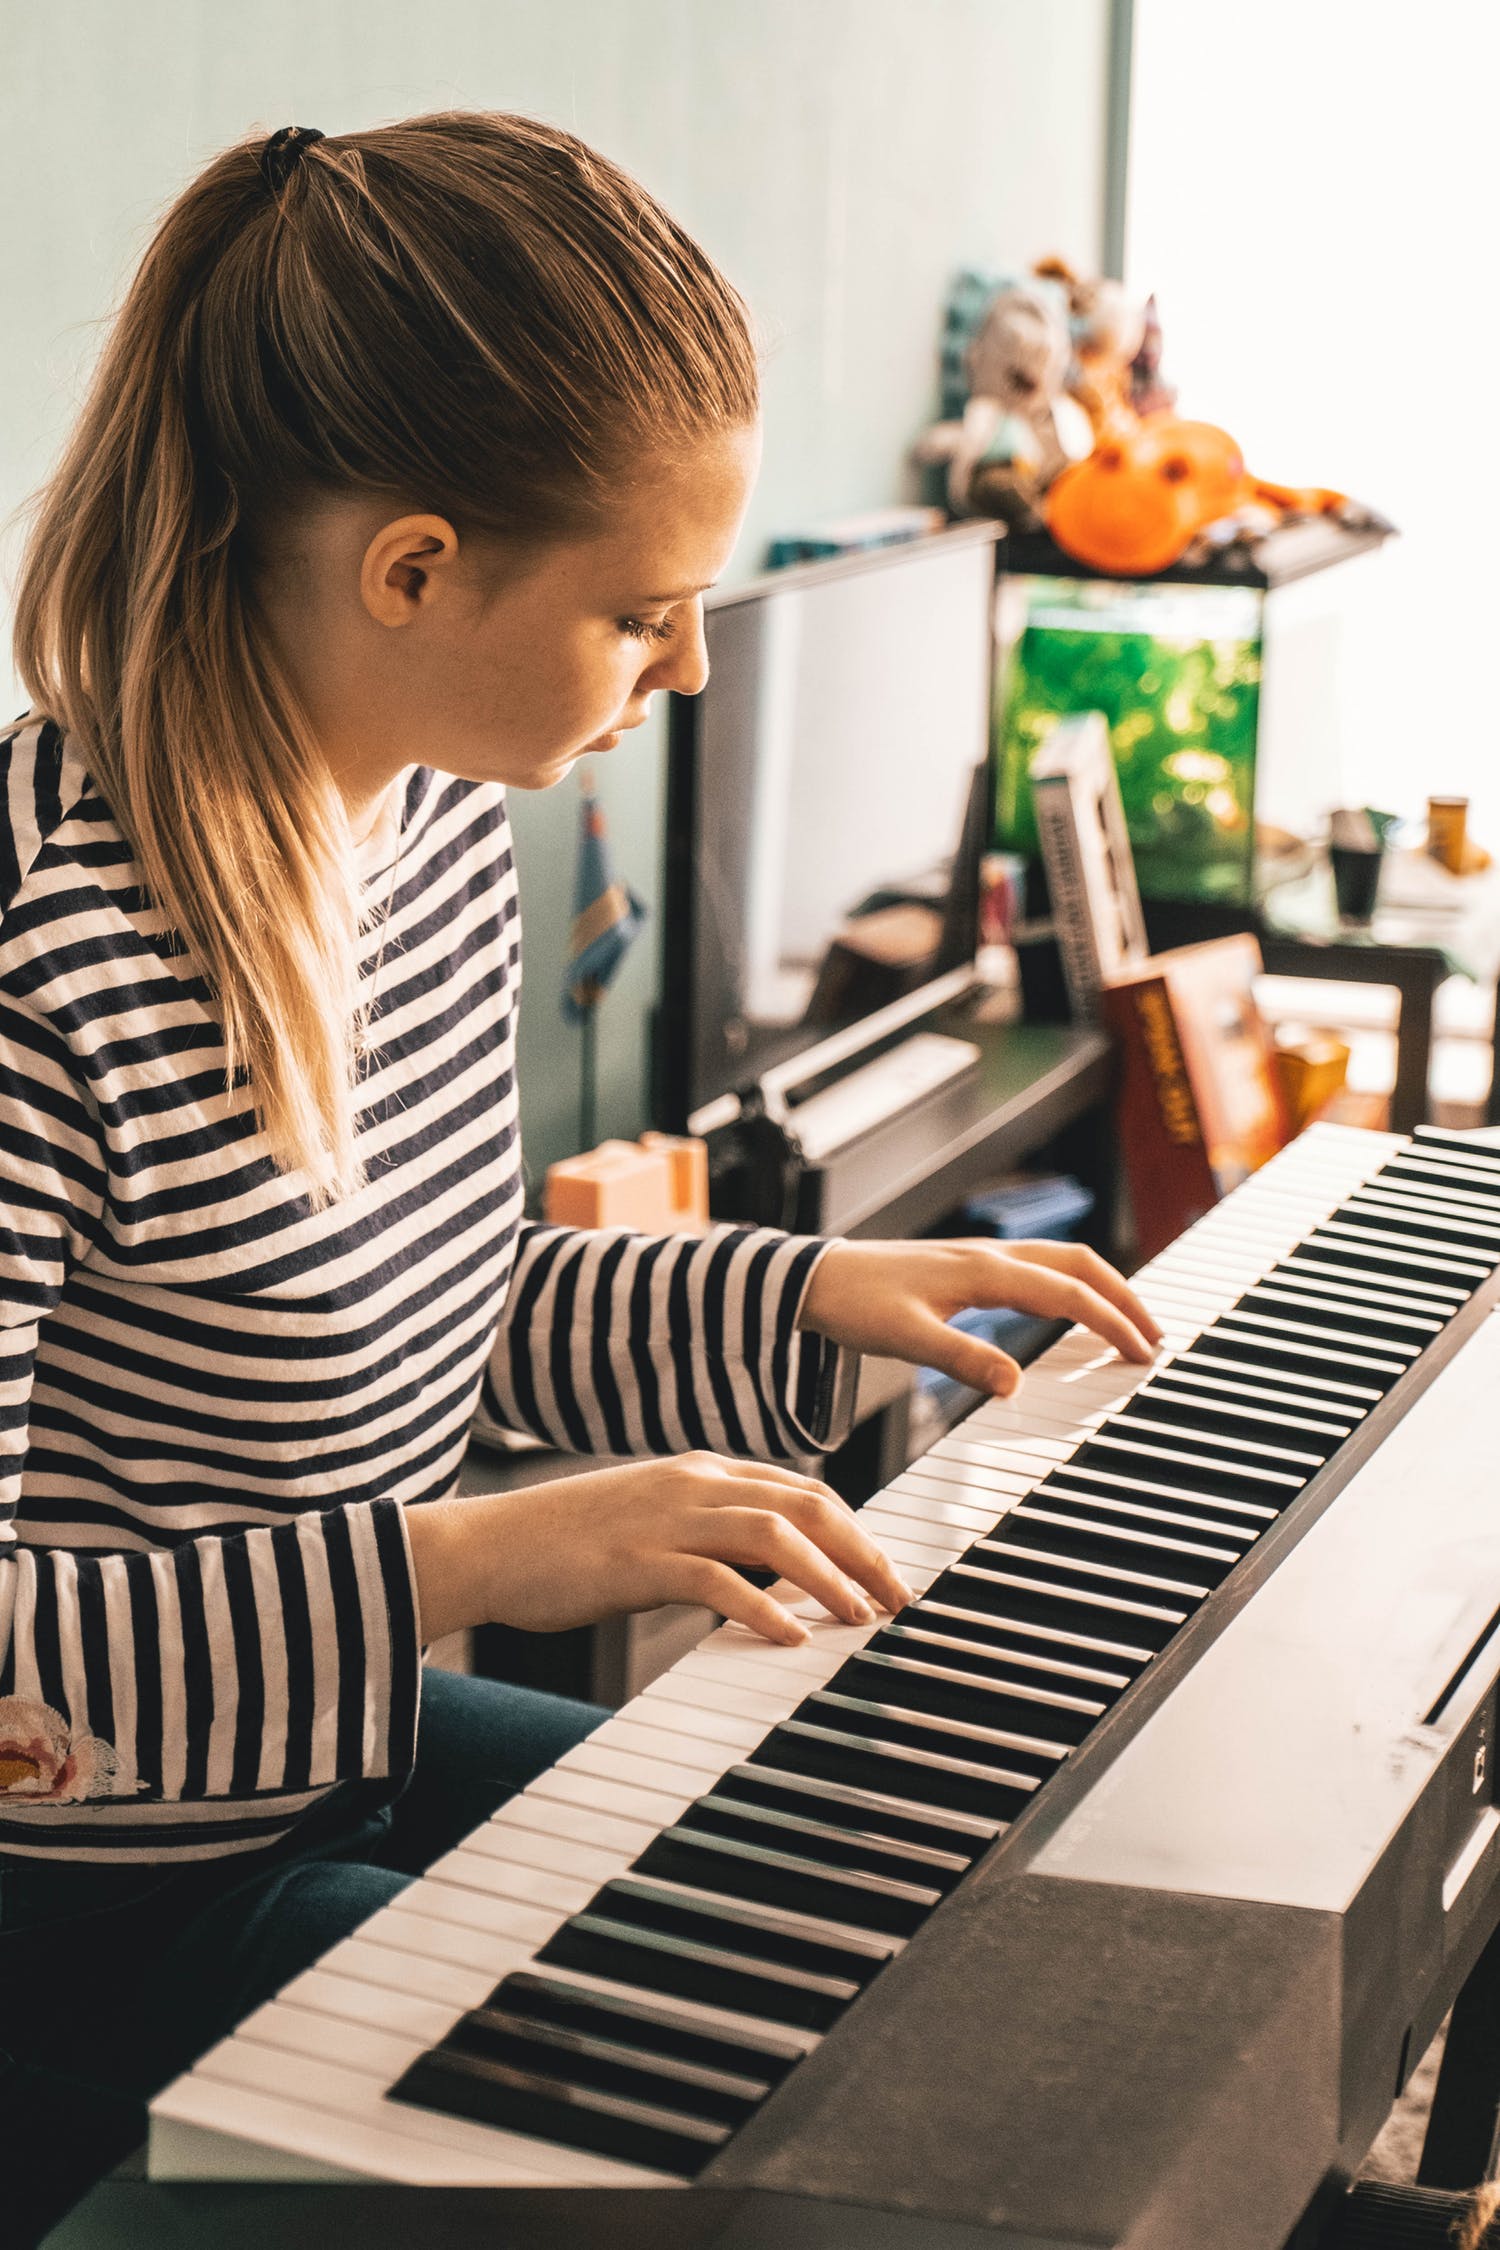 Piano numérique ou acoustique, quel est le meilleur pour apprendre à jouer ?